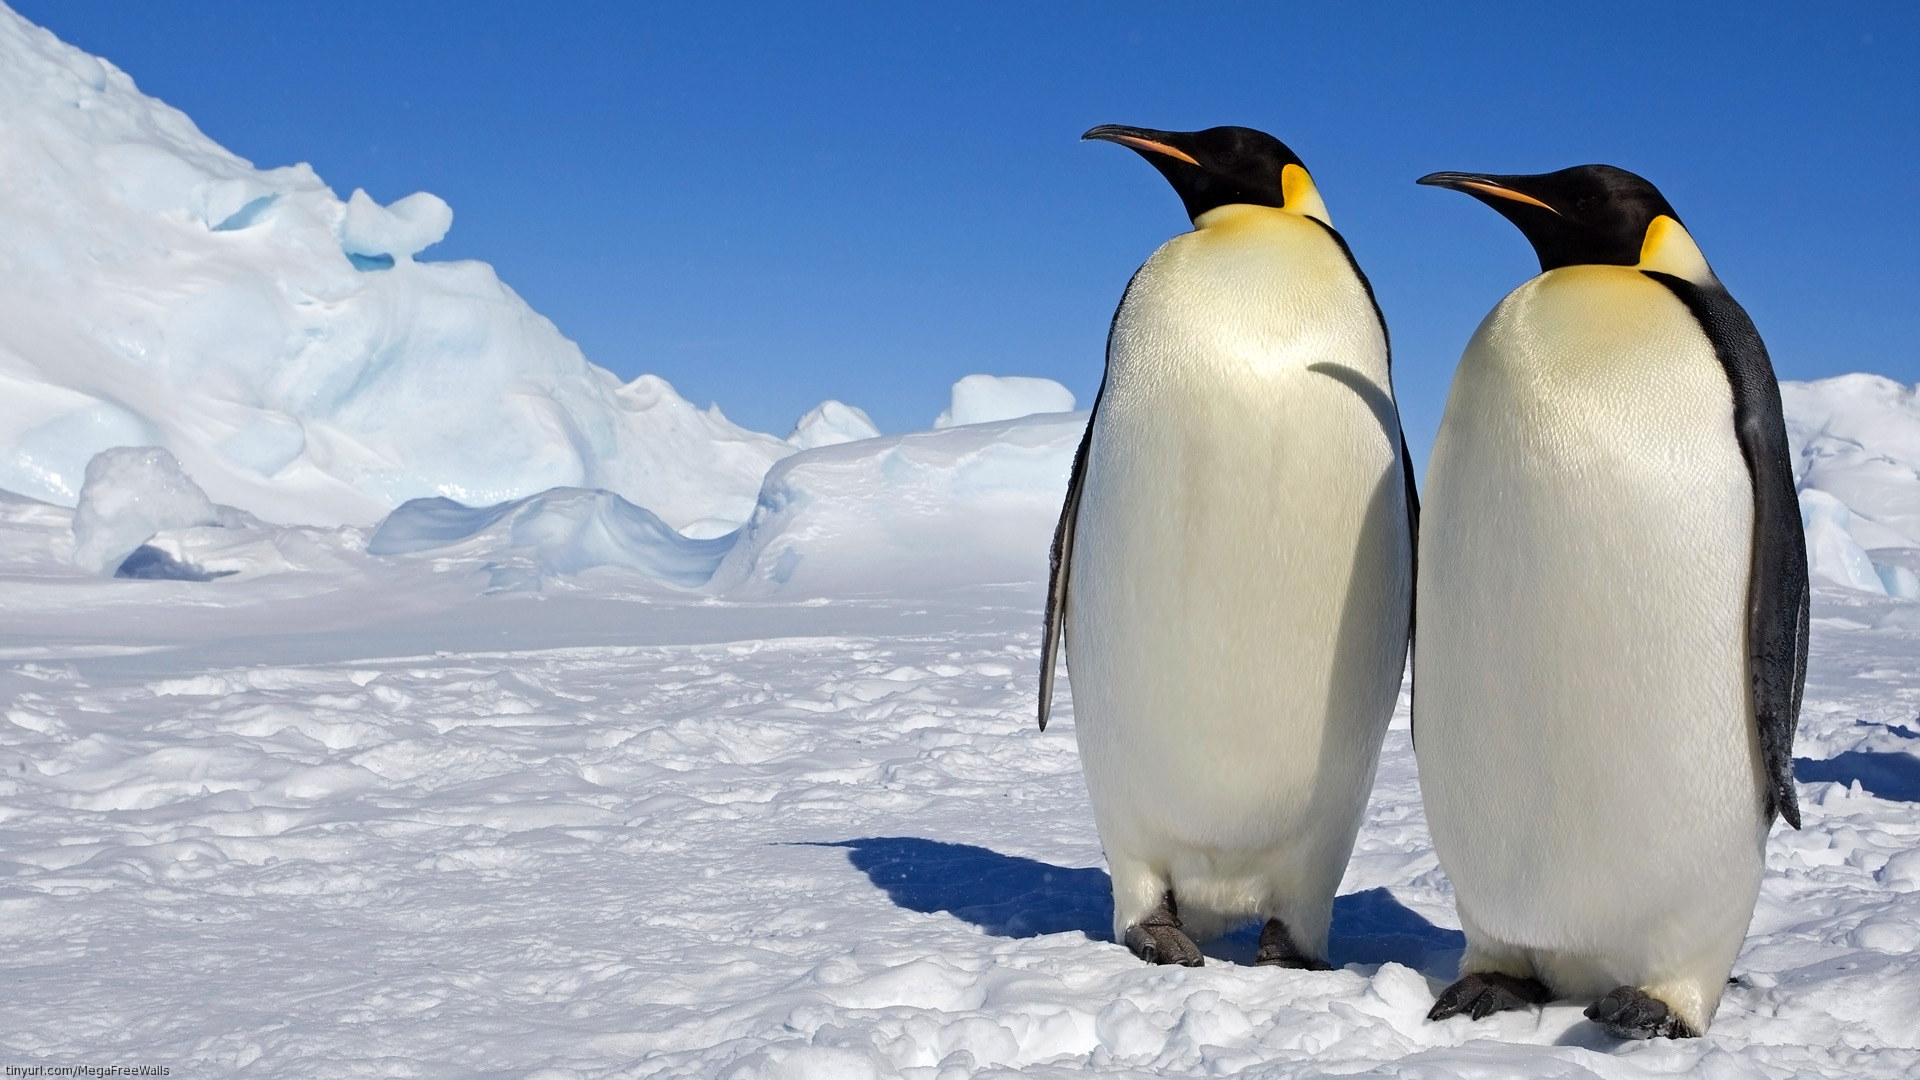 Скачать обои Марш Пингвинов на телефон бесплатно